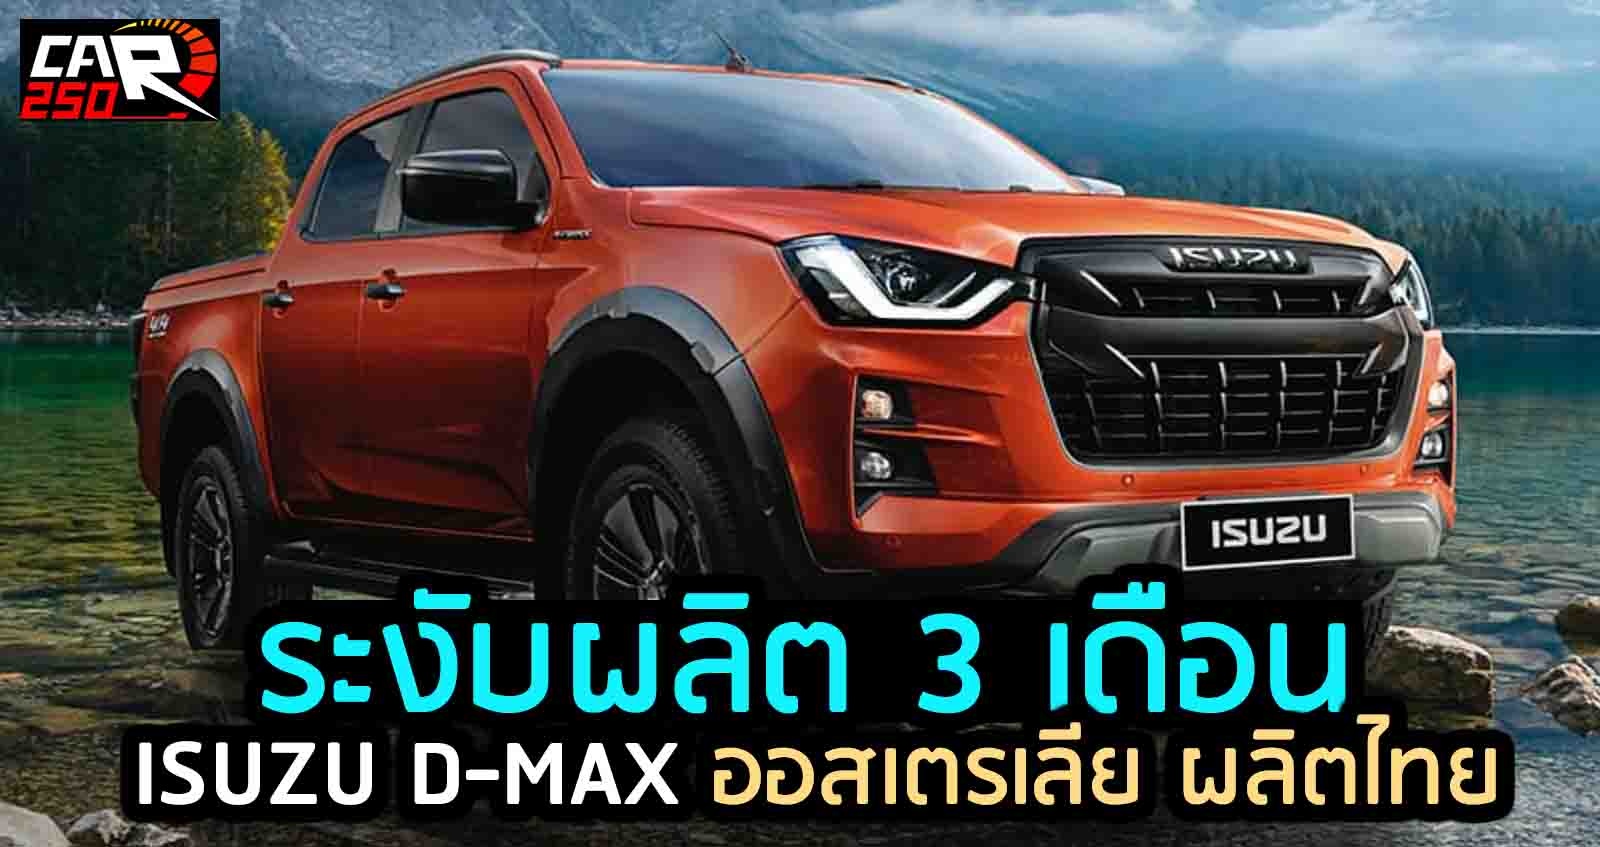 ระงับผลิต 3 เดือน ISUZU D-MAX ออสเตรเลีย ผลิตในไทย